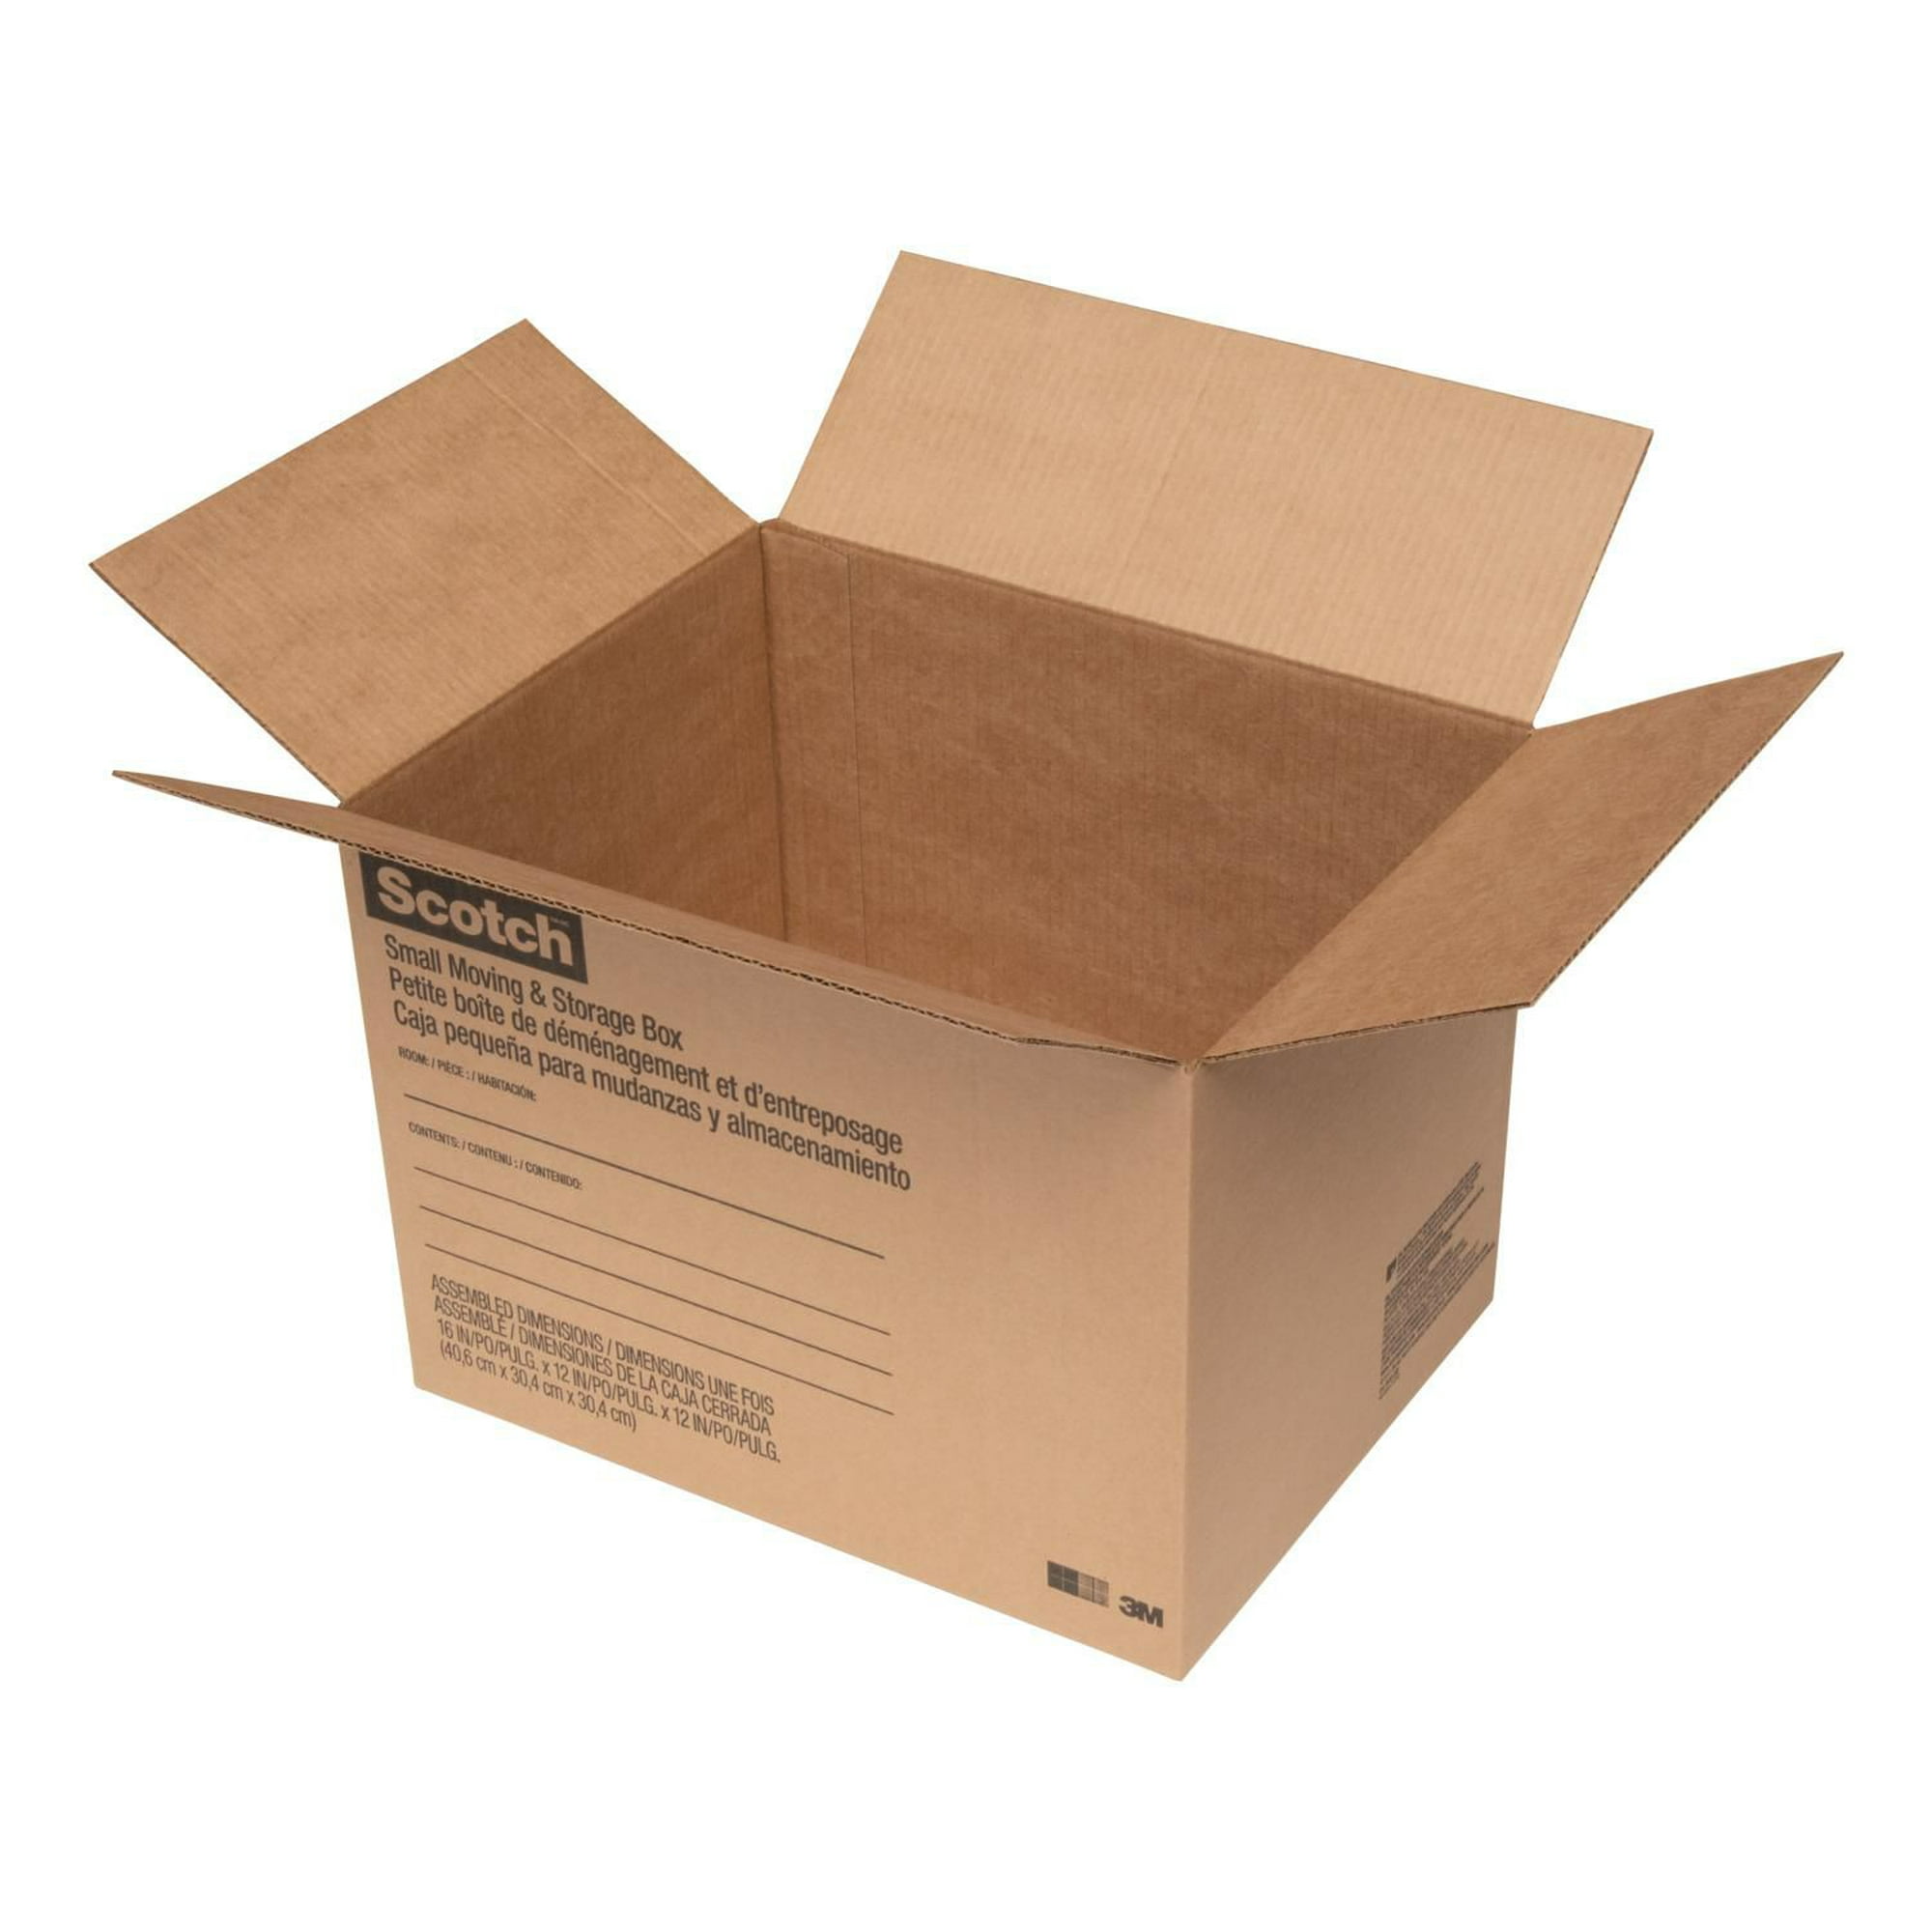 Scotch™ Moving & Storage Box 8026-ESF, 16 in x 12 in x 12 in, Storage Box 